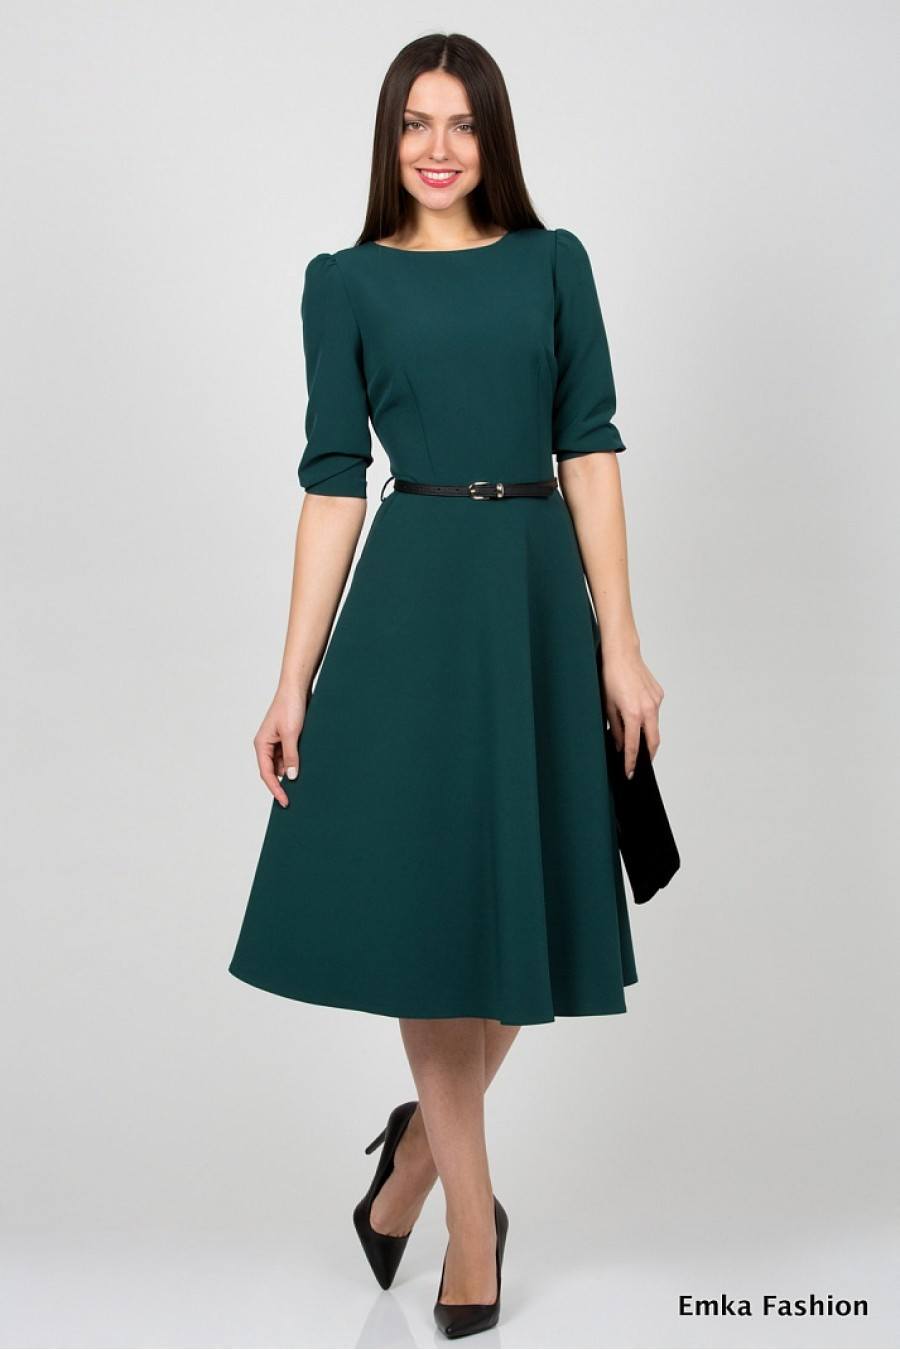 Модные офисные платья: 70 изящных фасонов для деловой женщины